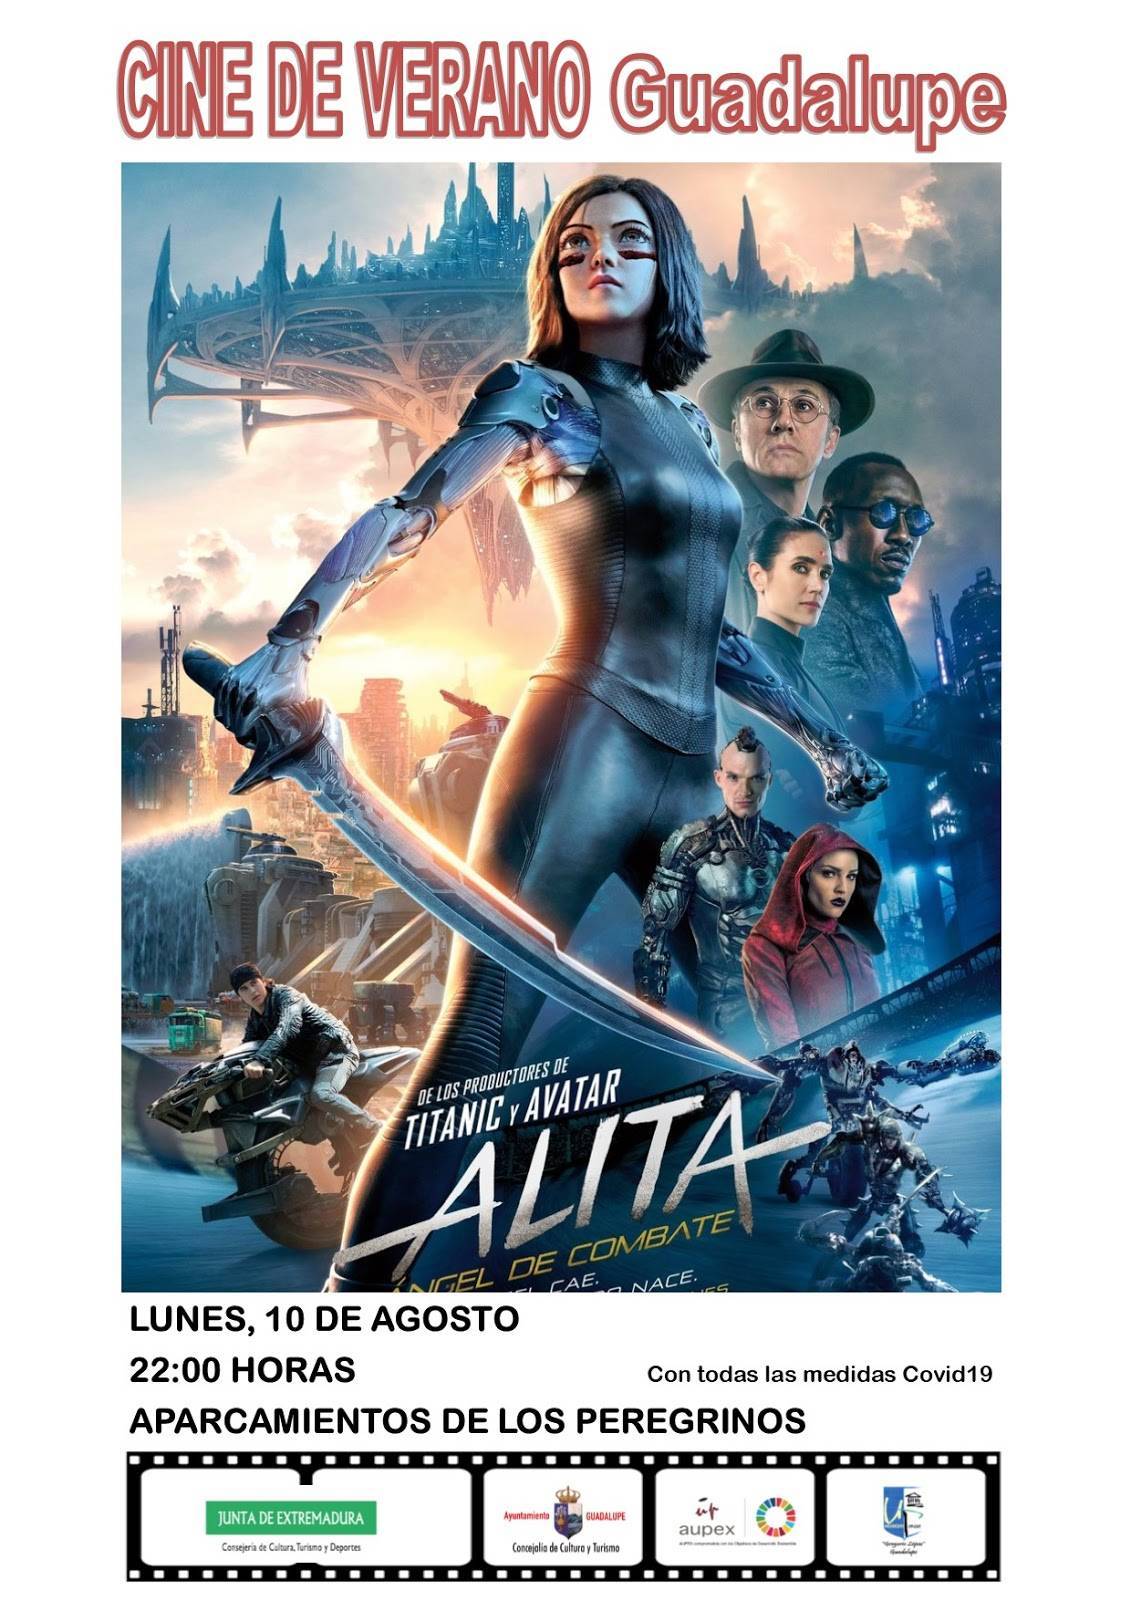 Cine de verano 2020 - Guadalupe (Cáceres) 2